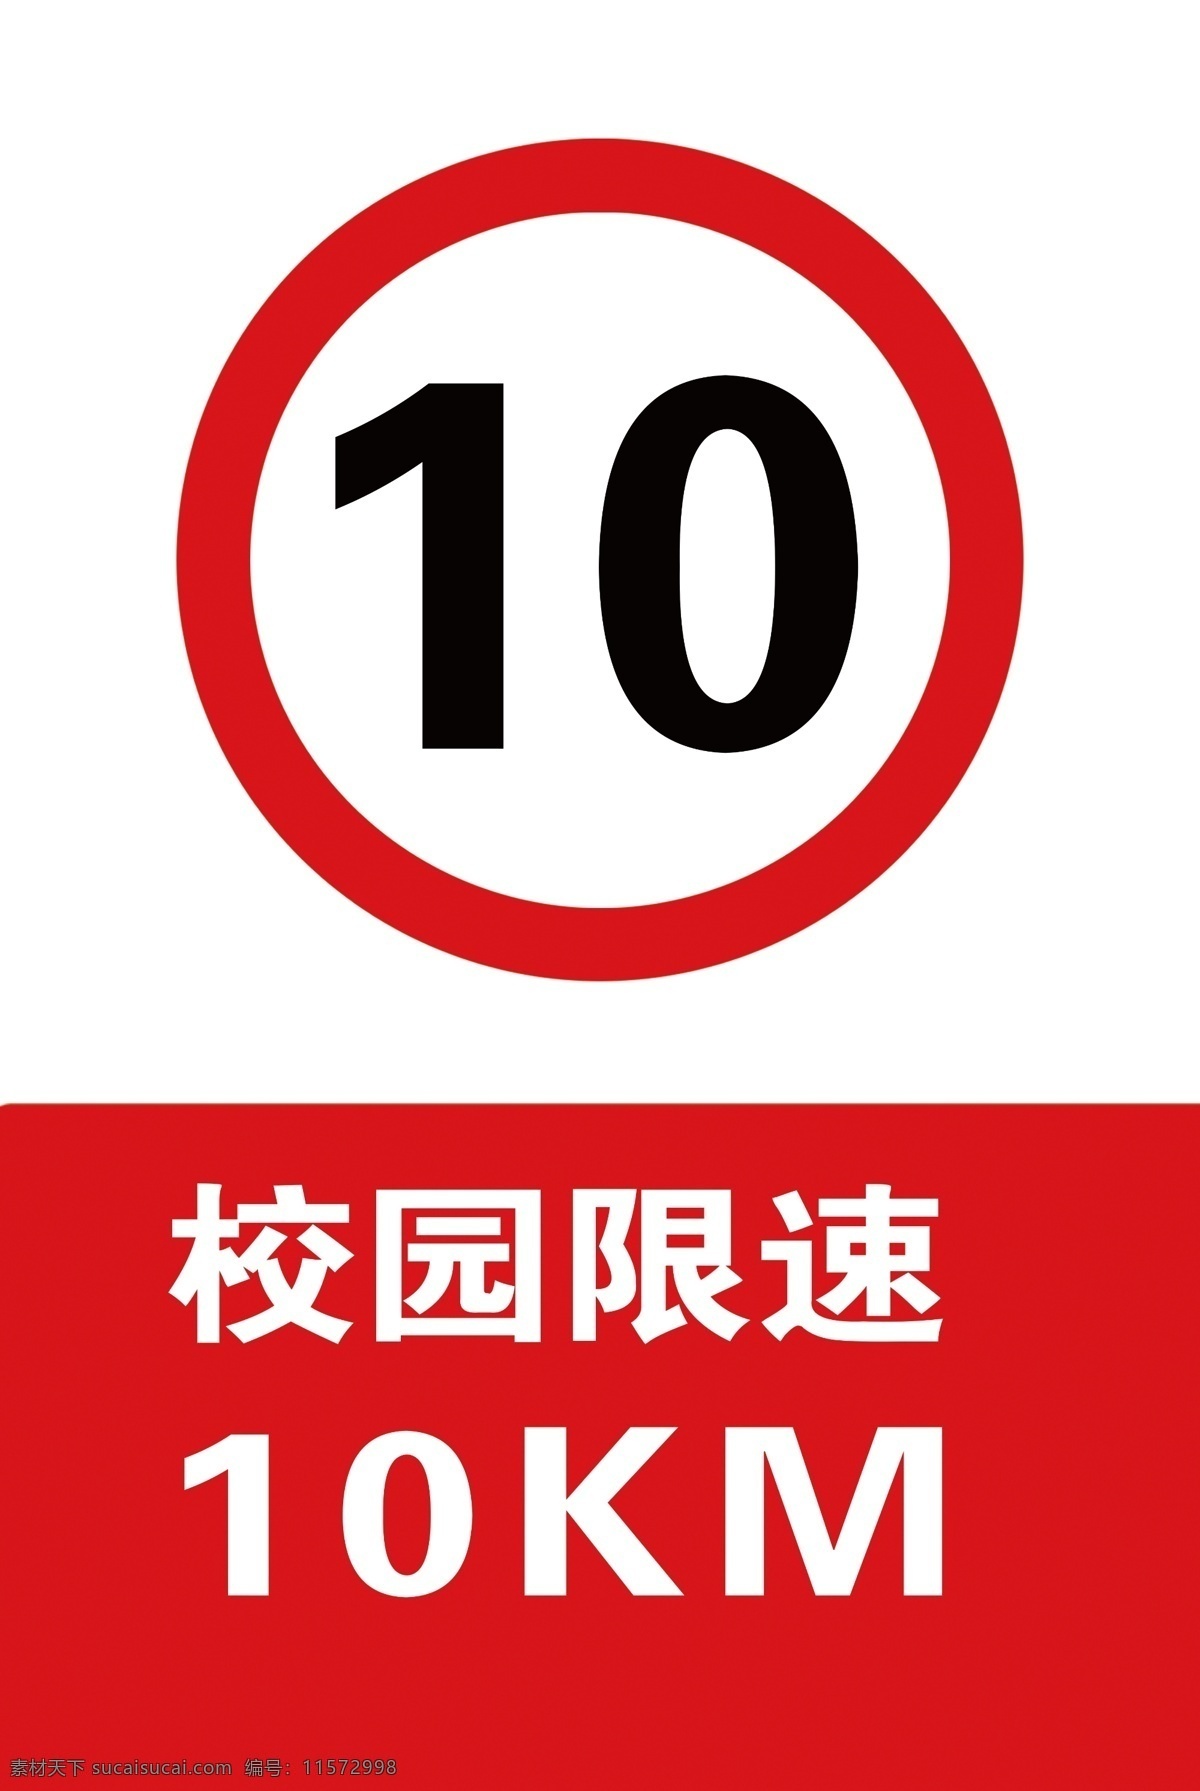 学校限速 限速10km 限速标志 竖版